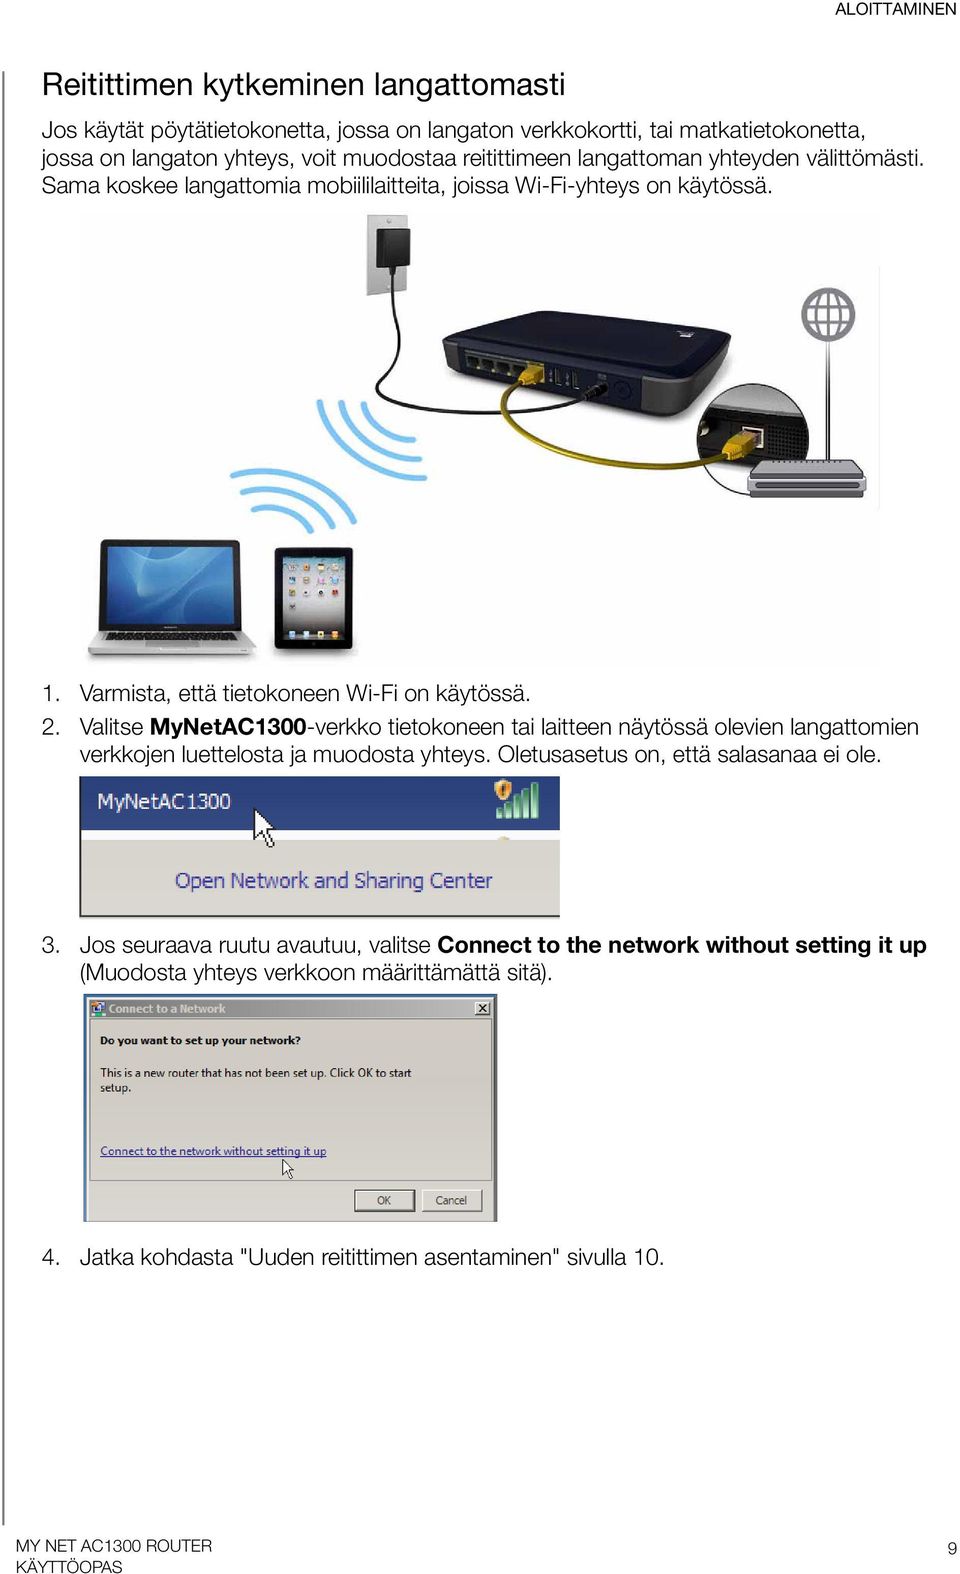 Valitse MyNetAC1300-verkko tietokoneen tai laitteen näytössä olevien langattomien verkkojen luettelosta ja muodosta yhteys. Oletusasetus on, että salasanaa ei ole. 3.